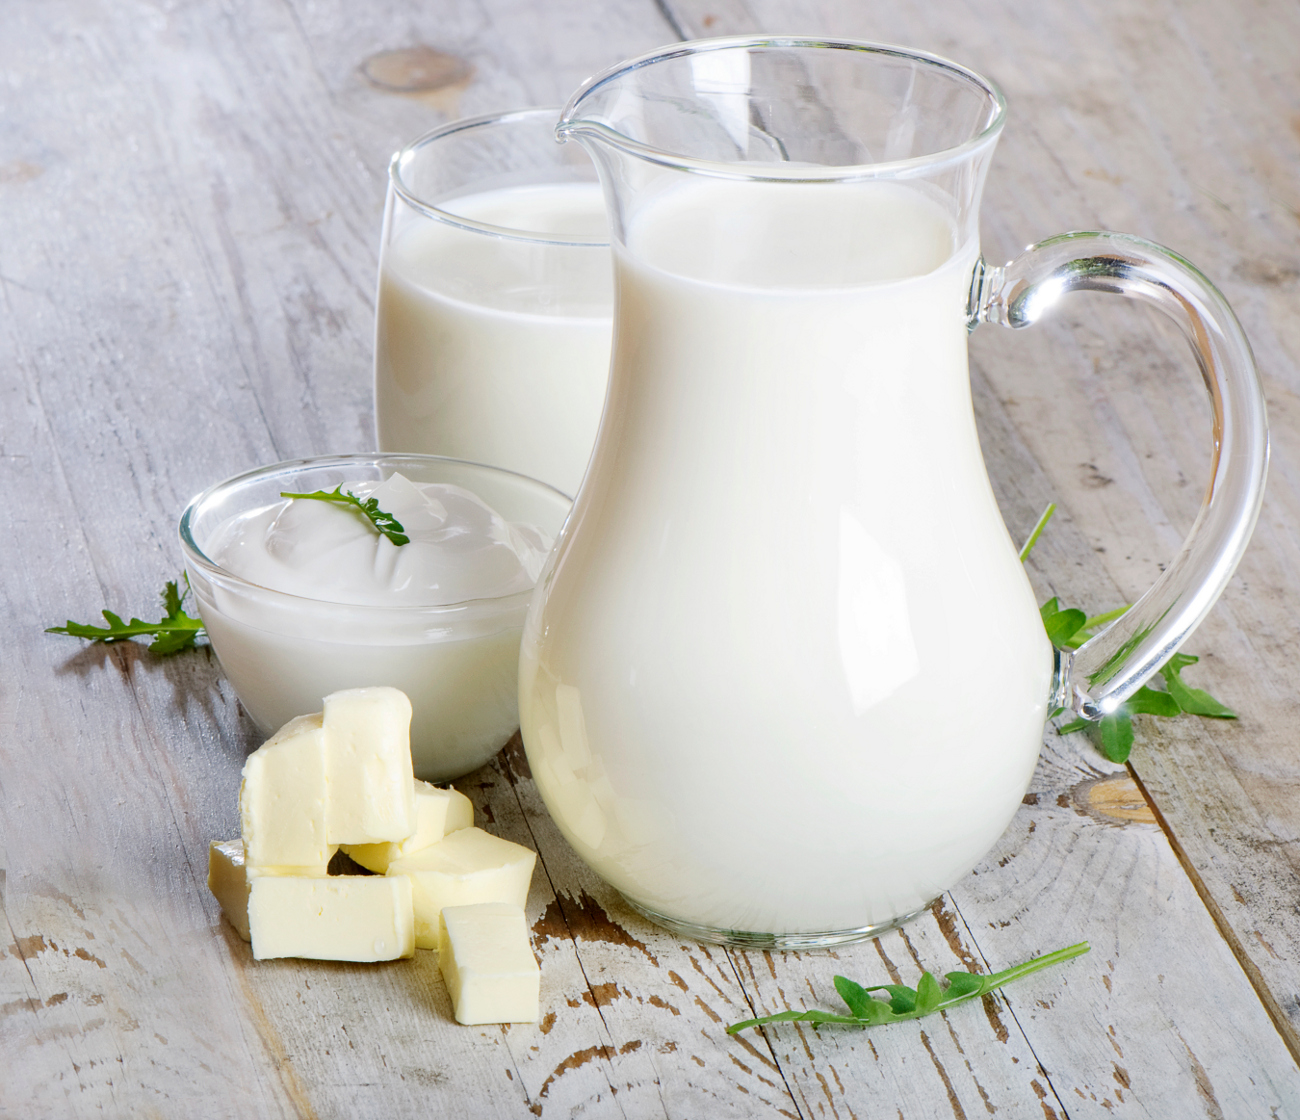 Viêm đại tràng nên uống sữa gì?